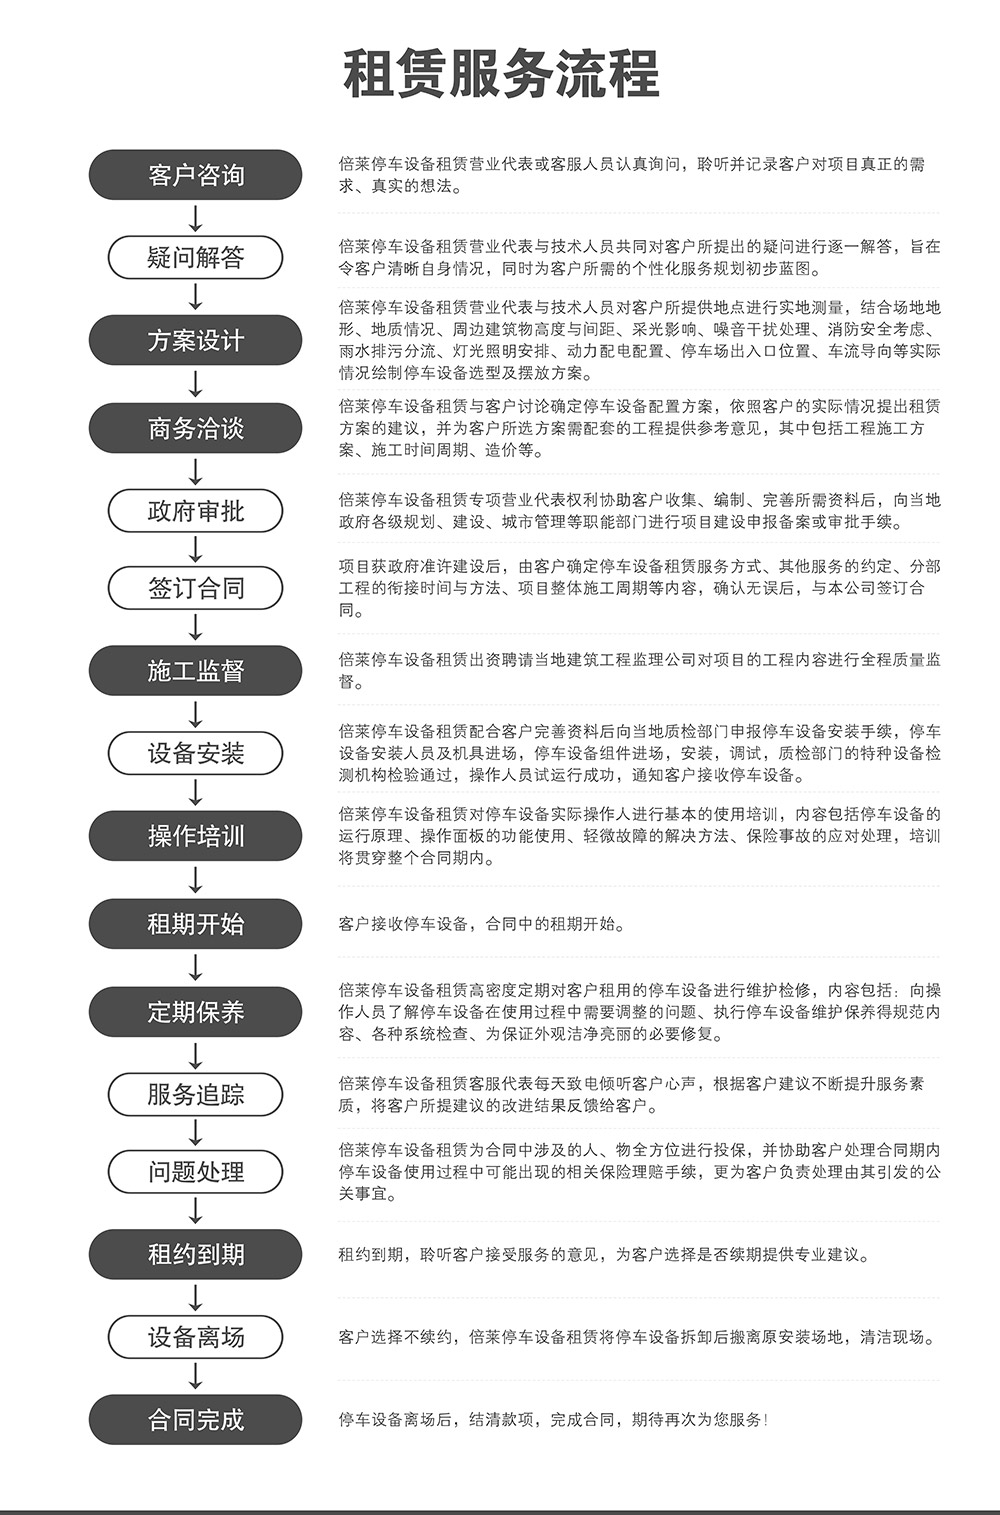 重庆四川倍莱停车设备租赁服务流程.jpg